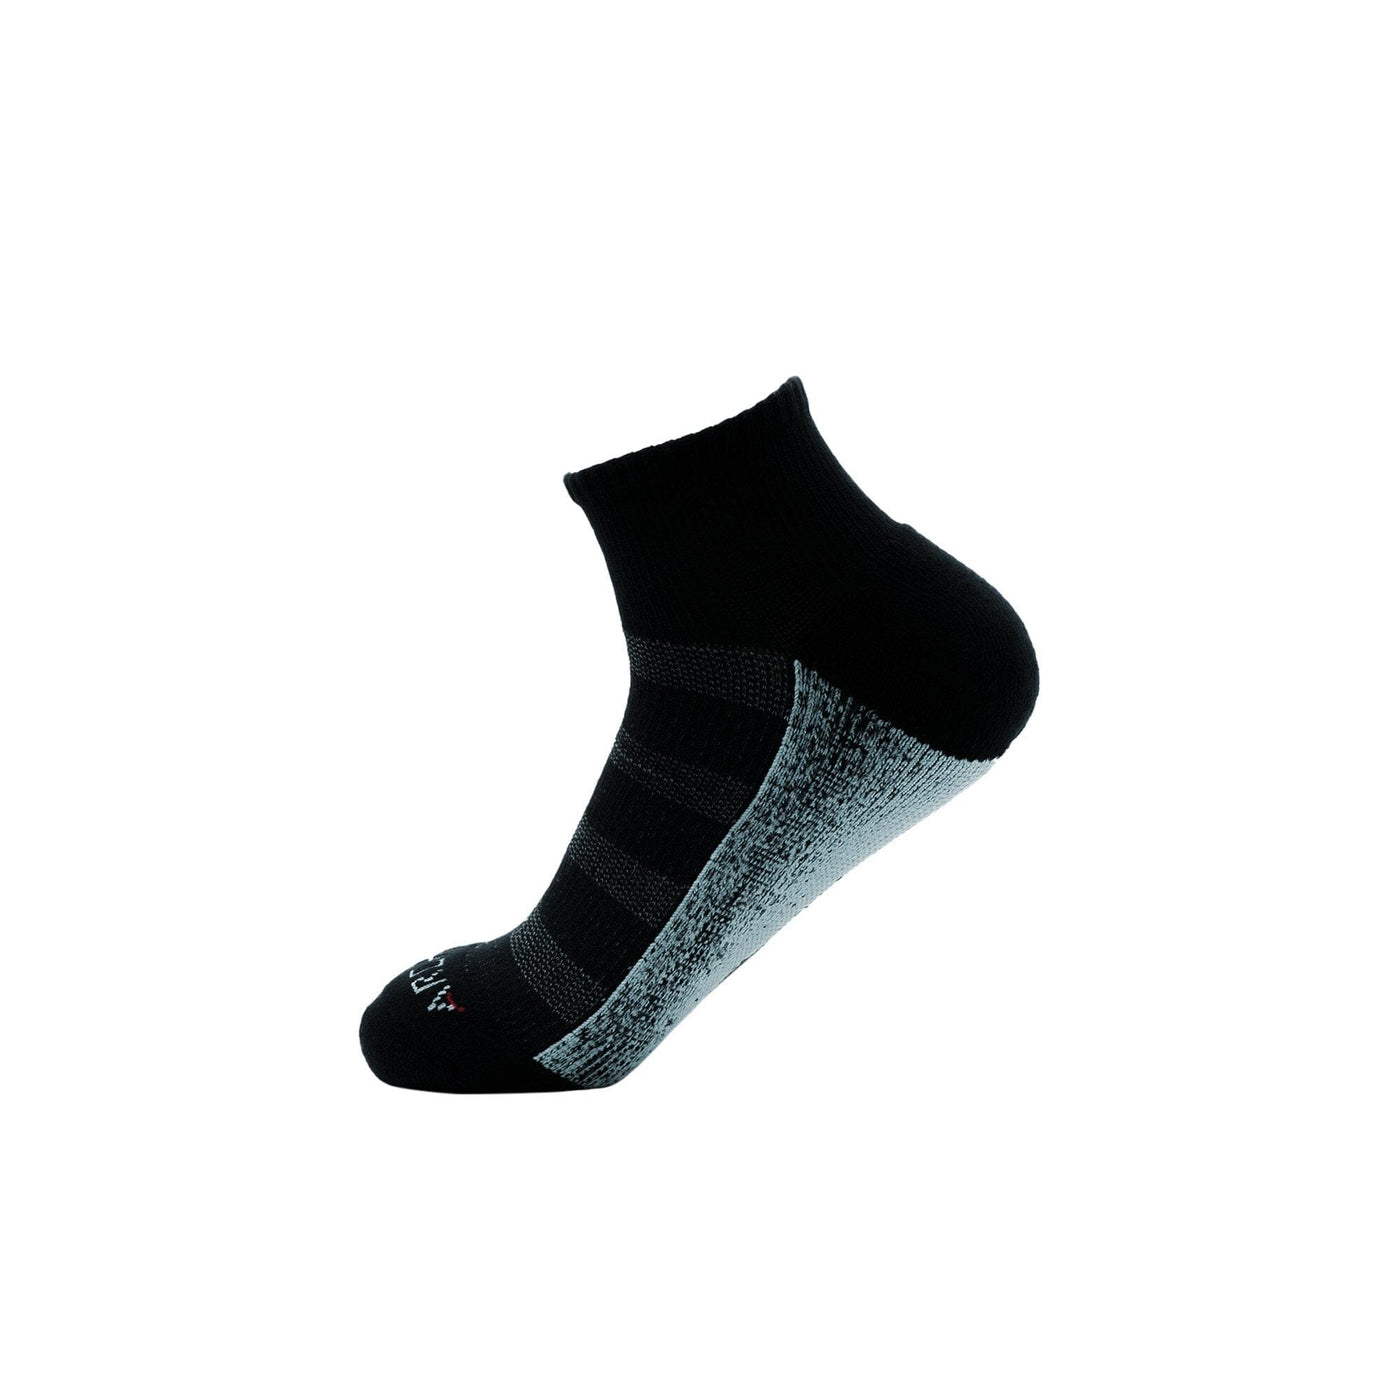 ArchTek® Quarter Socks (4 Pack Black) athletic socks ArchTek 